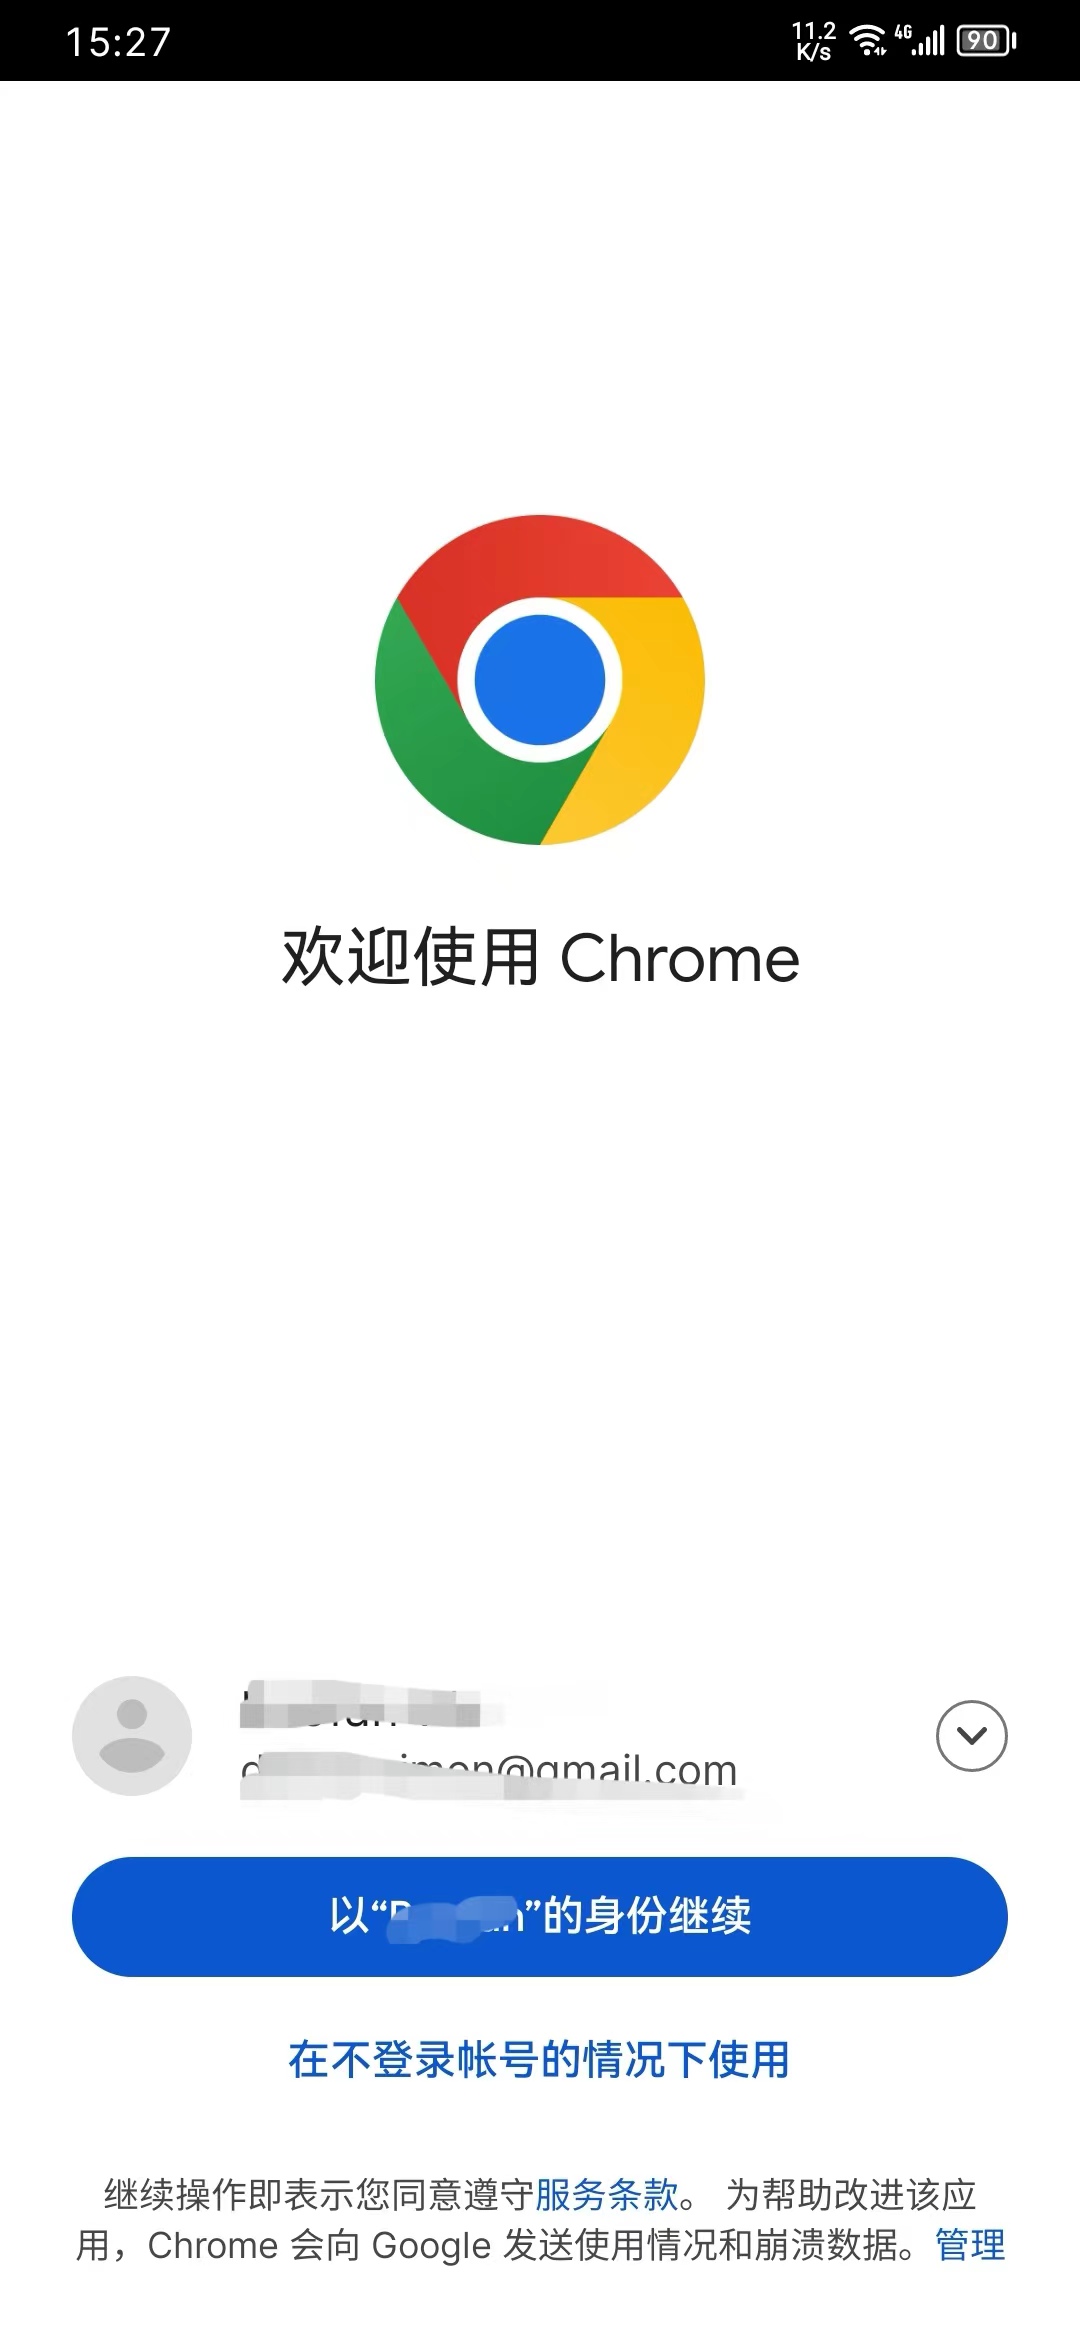 Chrome成功识别账户信息